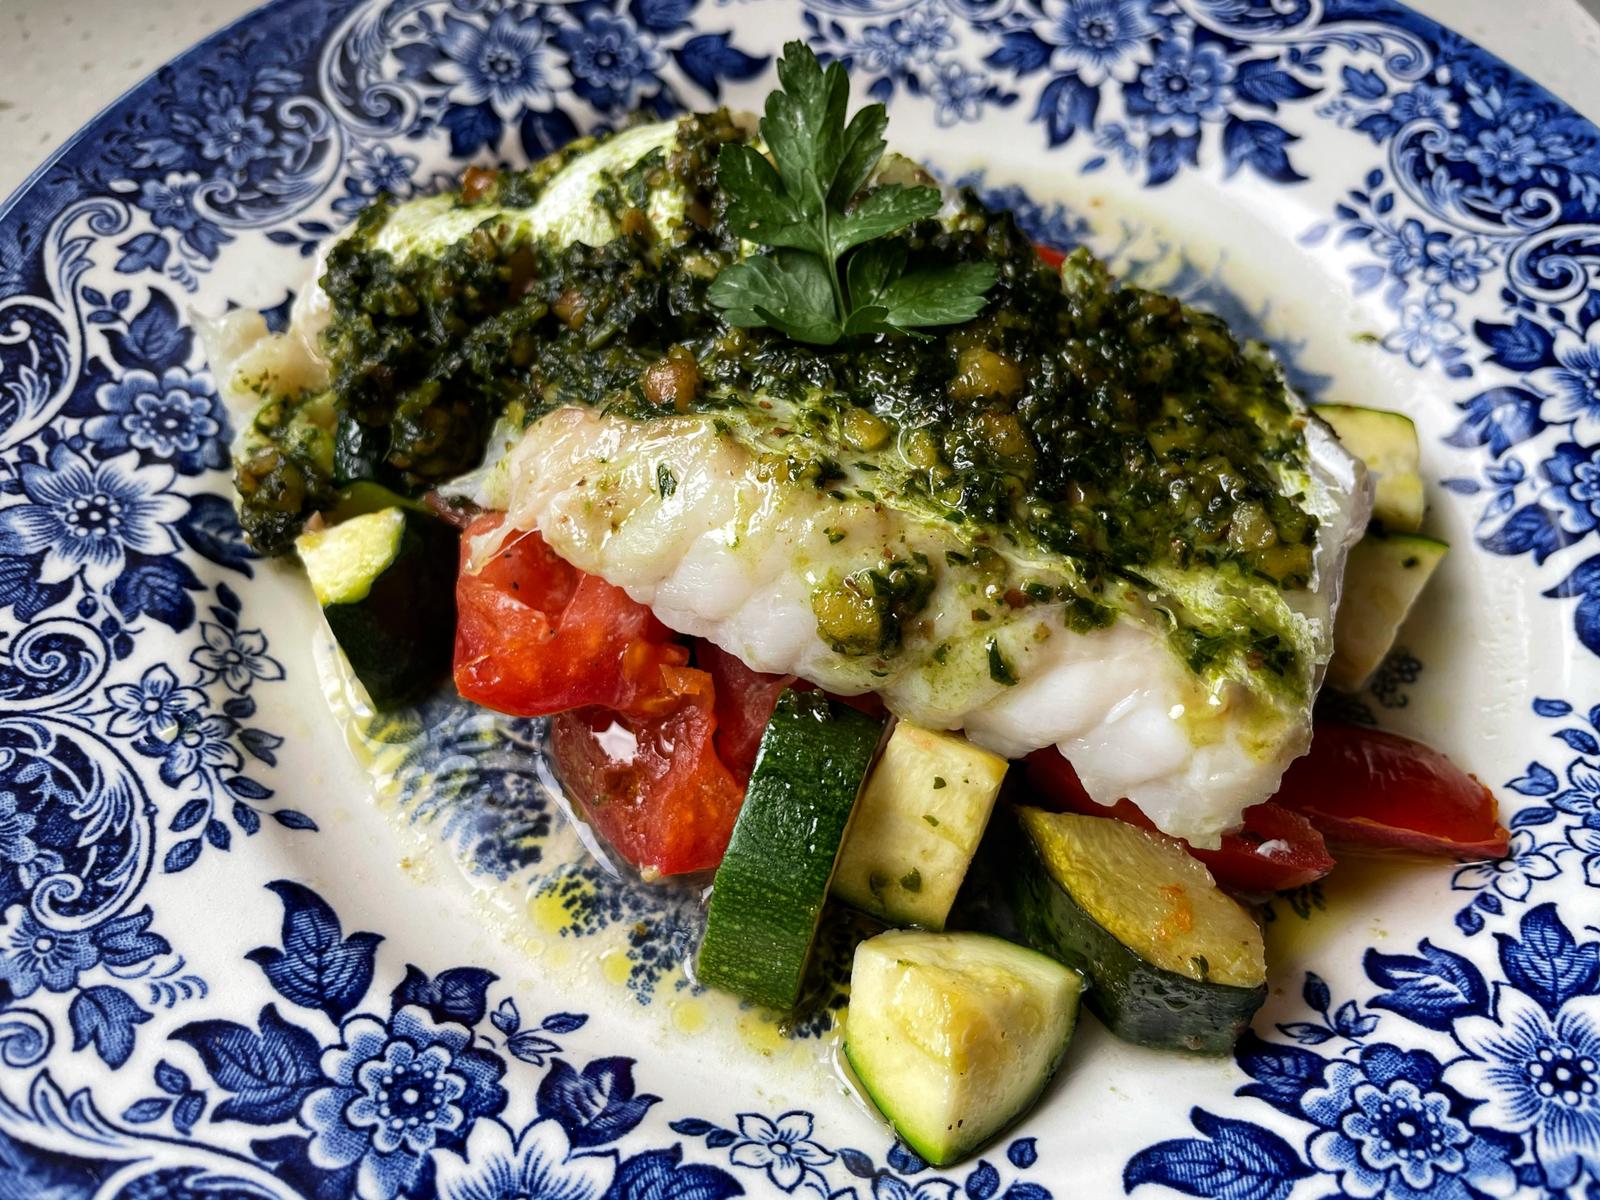 Recipe: Foil-baked Pesto Cod with Tomato and Zucchini